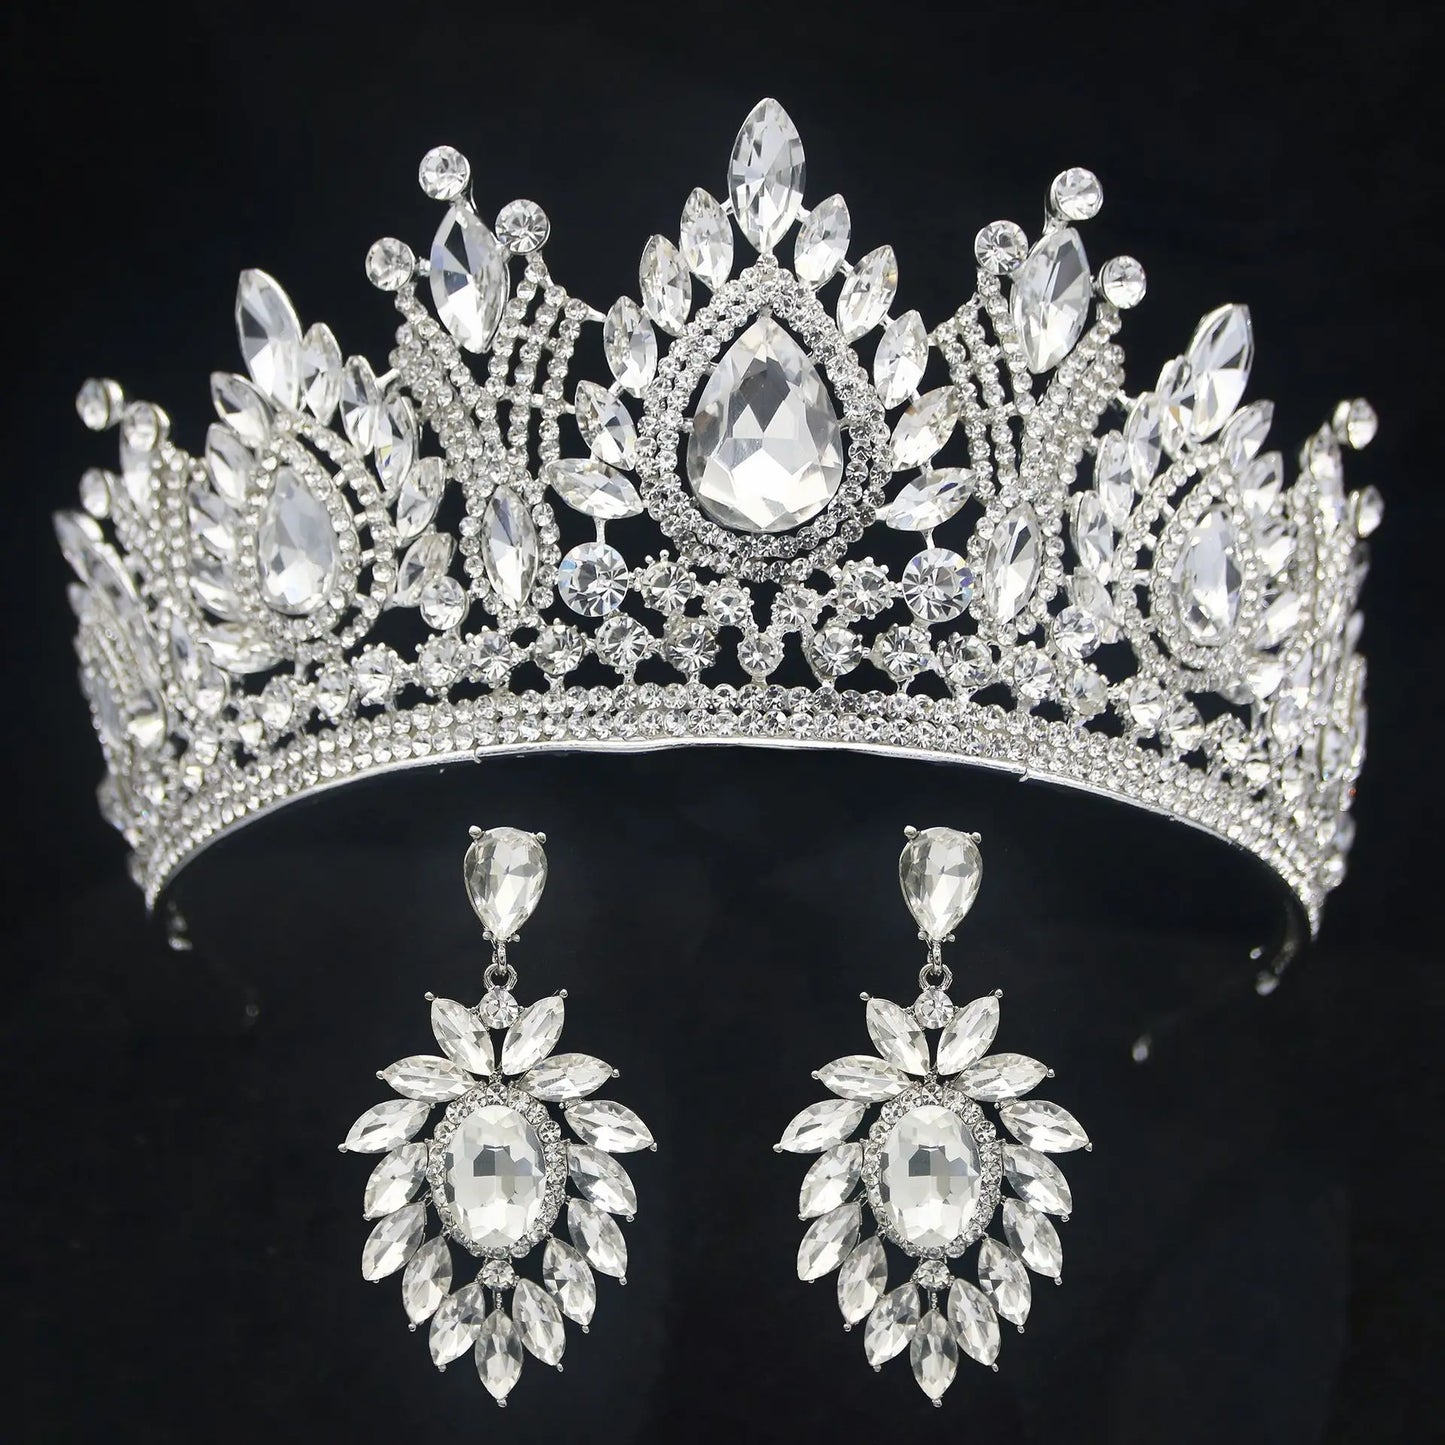 Water Drop Puprle Crystal Tiara Crown